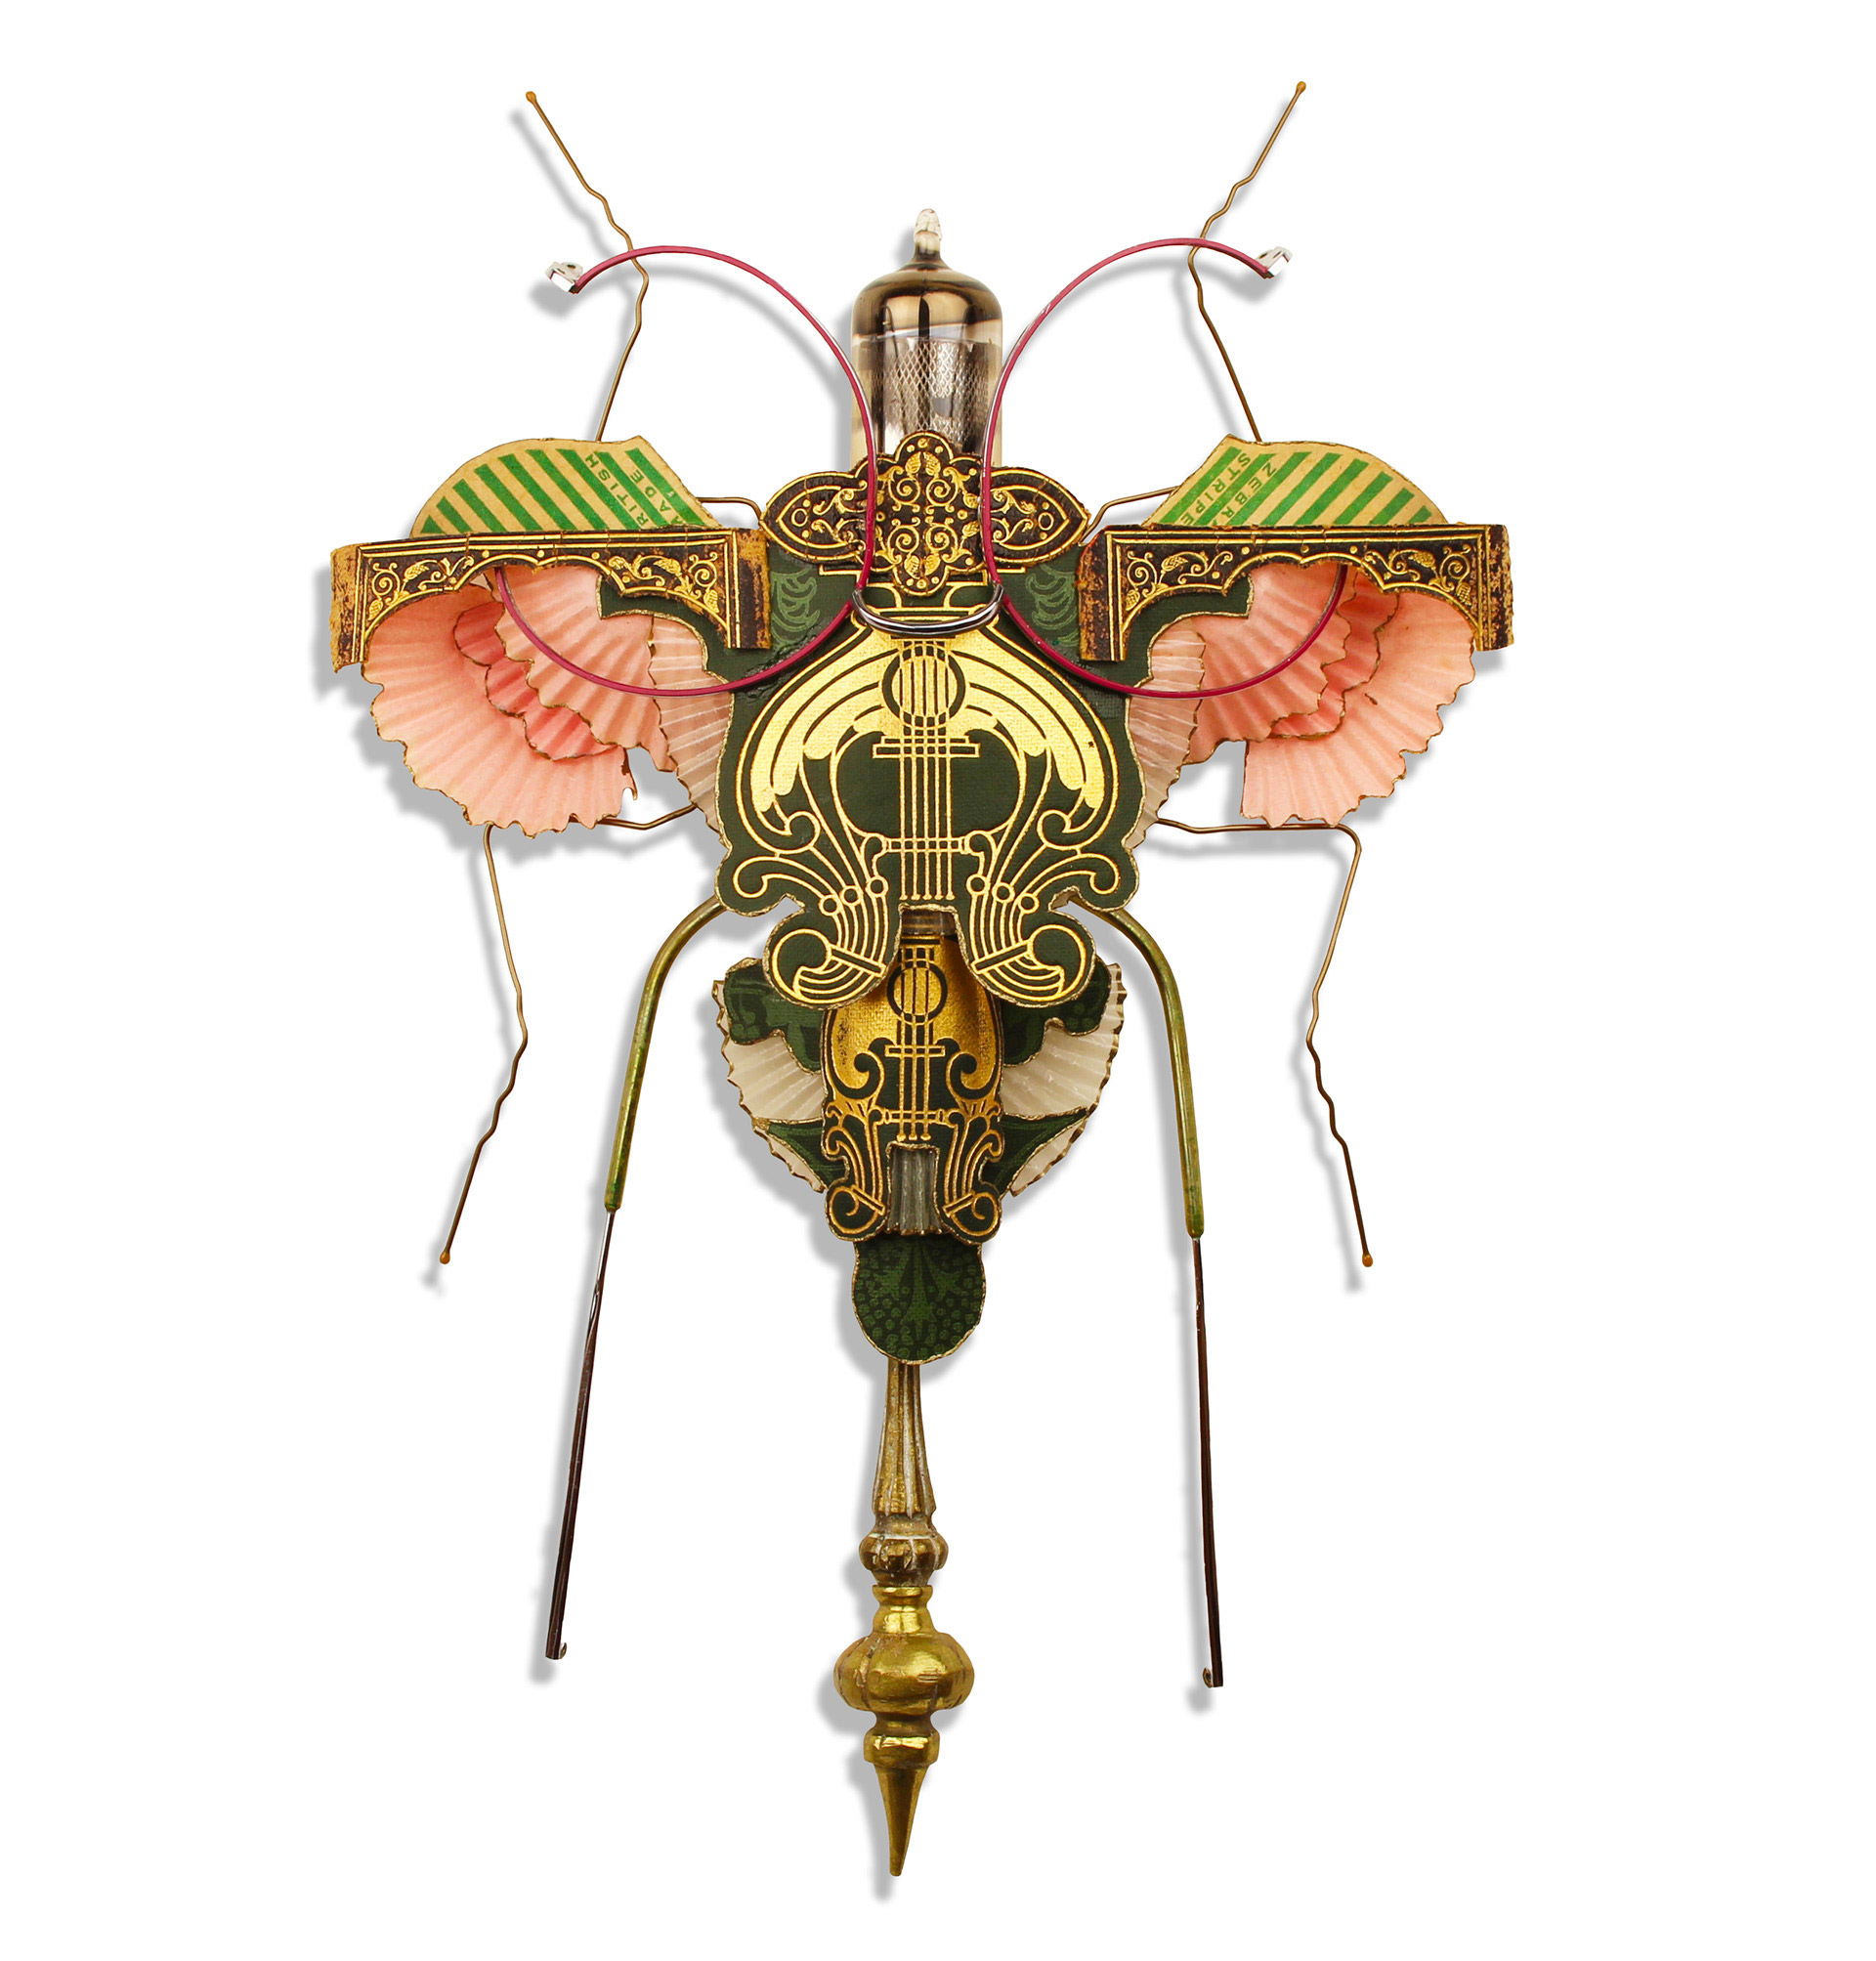 英国艺术家Mark Oliver用废弃物拼凑出的昆虫